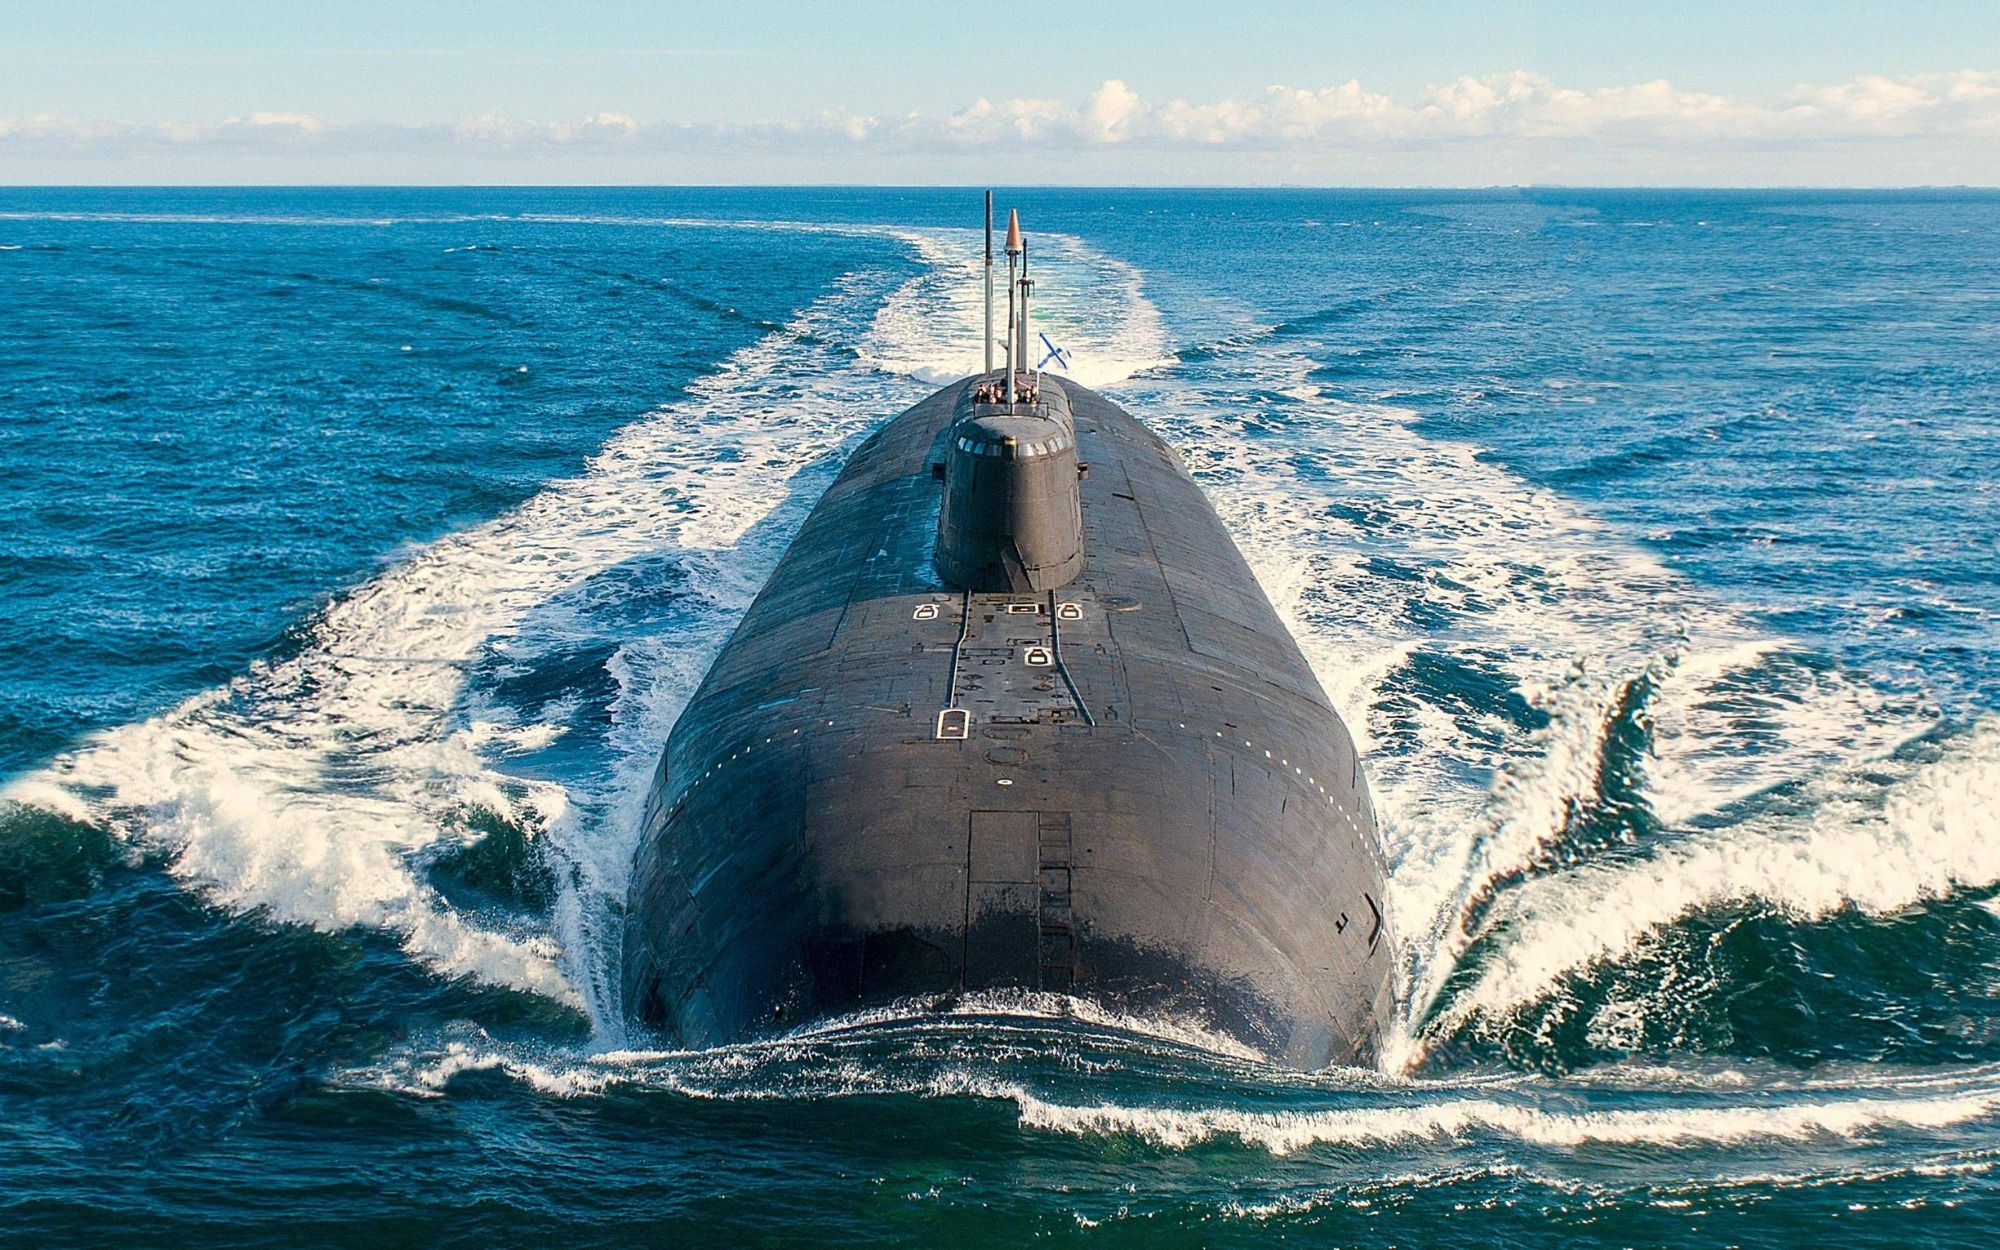 Αμερικανός στρατηγός: «Ο Στόλος πυρηνικών υποβρυχίων της Ρωσίας έχει πρωτοφανή ετοιμότητα αυτή τη στιγμή»